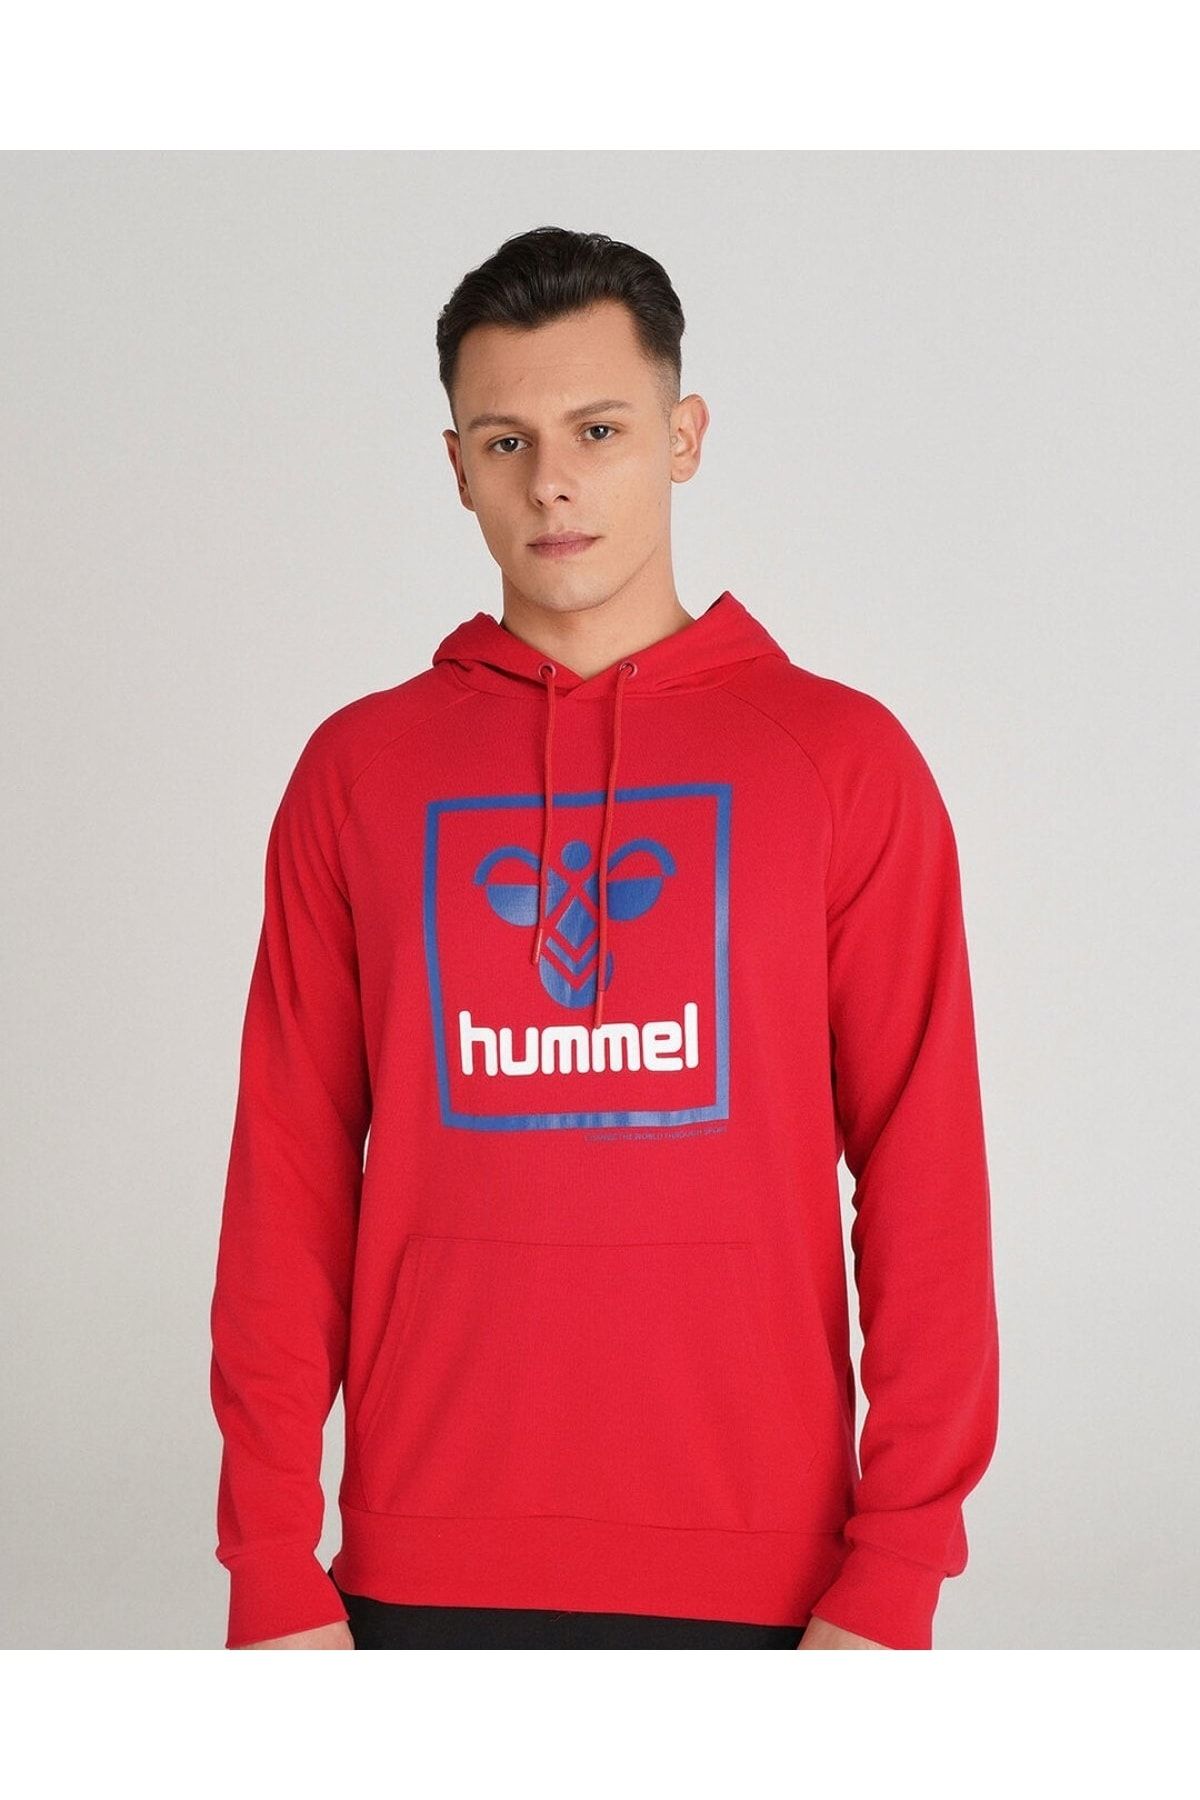 hummel Erkek T-ısam 2.0 Kırmızı Sweatshirt 921556-3658